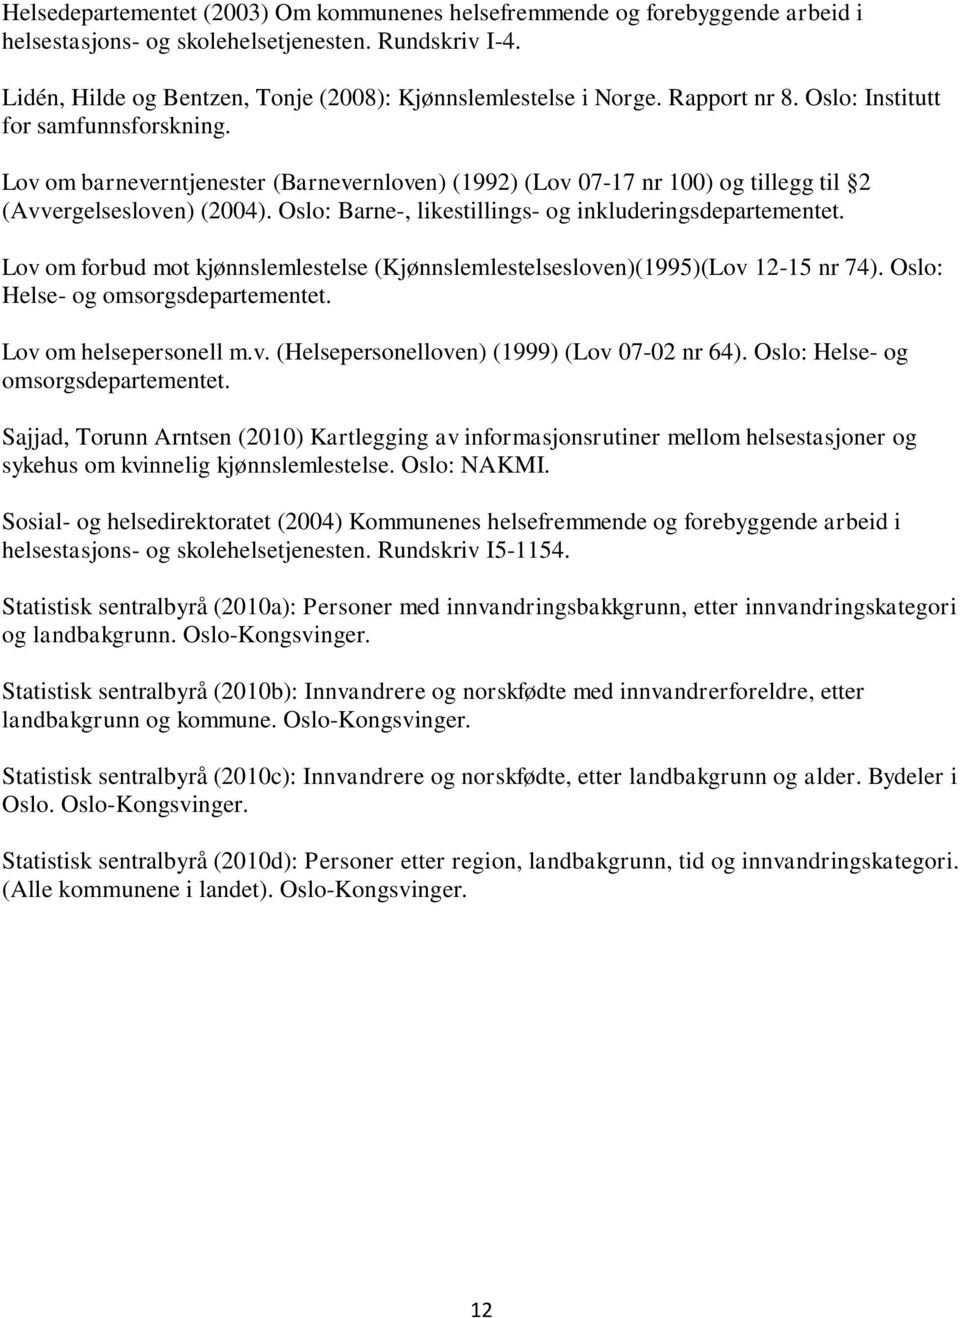 Oslo: Barne-, likestillings- og inkluderingsdepartementet. Lov om forbud mot kjønnslemlestelse (Kjønnslemlestelsesloven)(1995)(Lov 12-15 nr 74). Oslo: Helse- og omsorgsdepartementet.